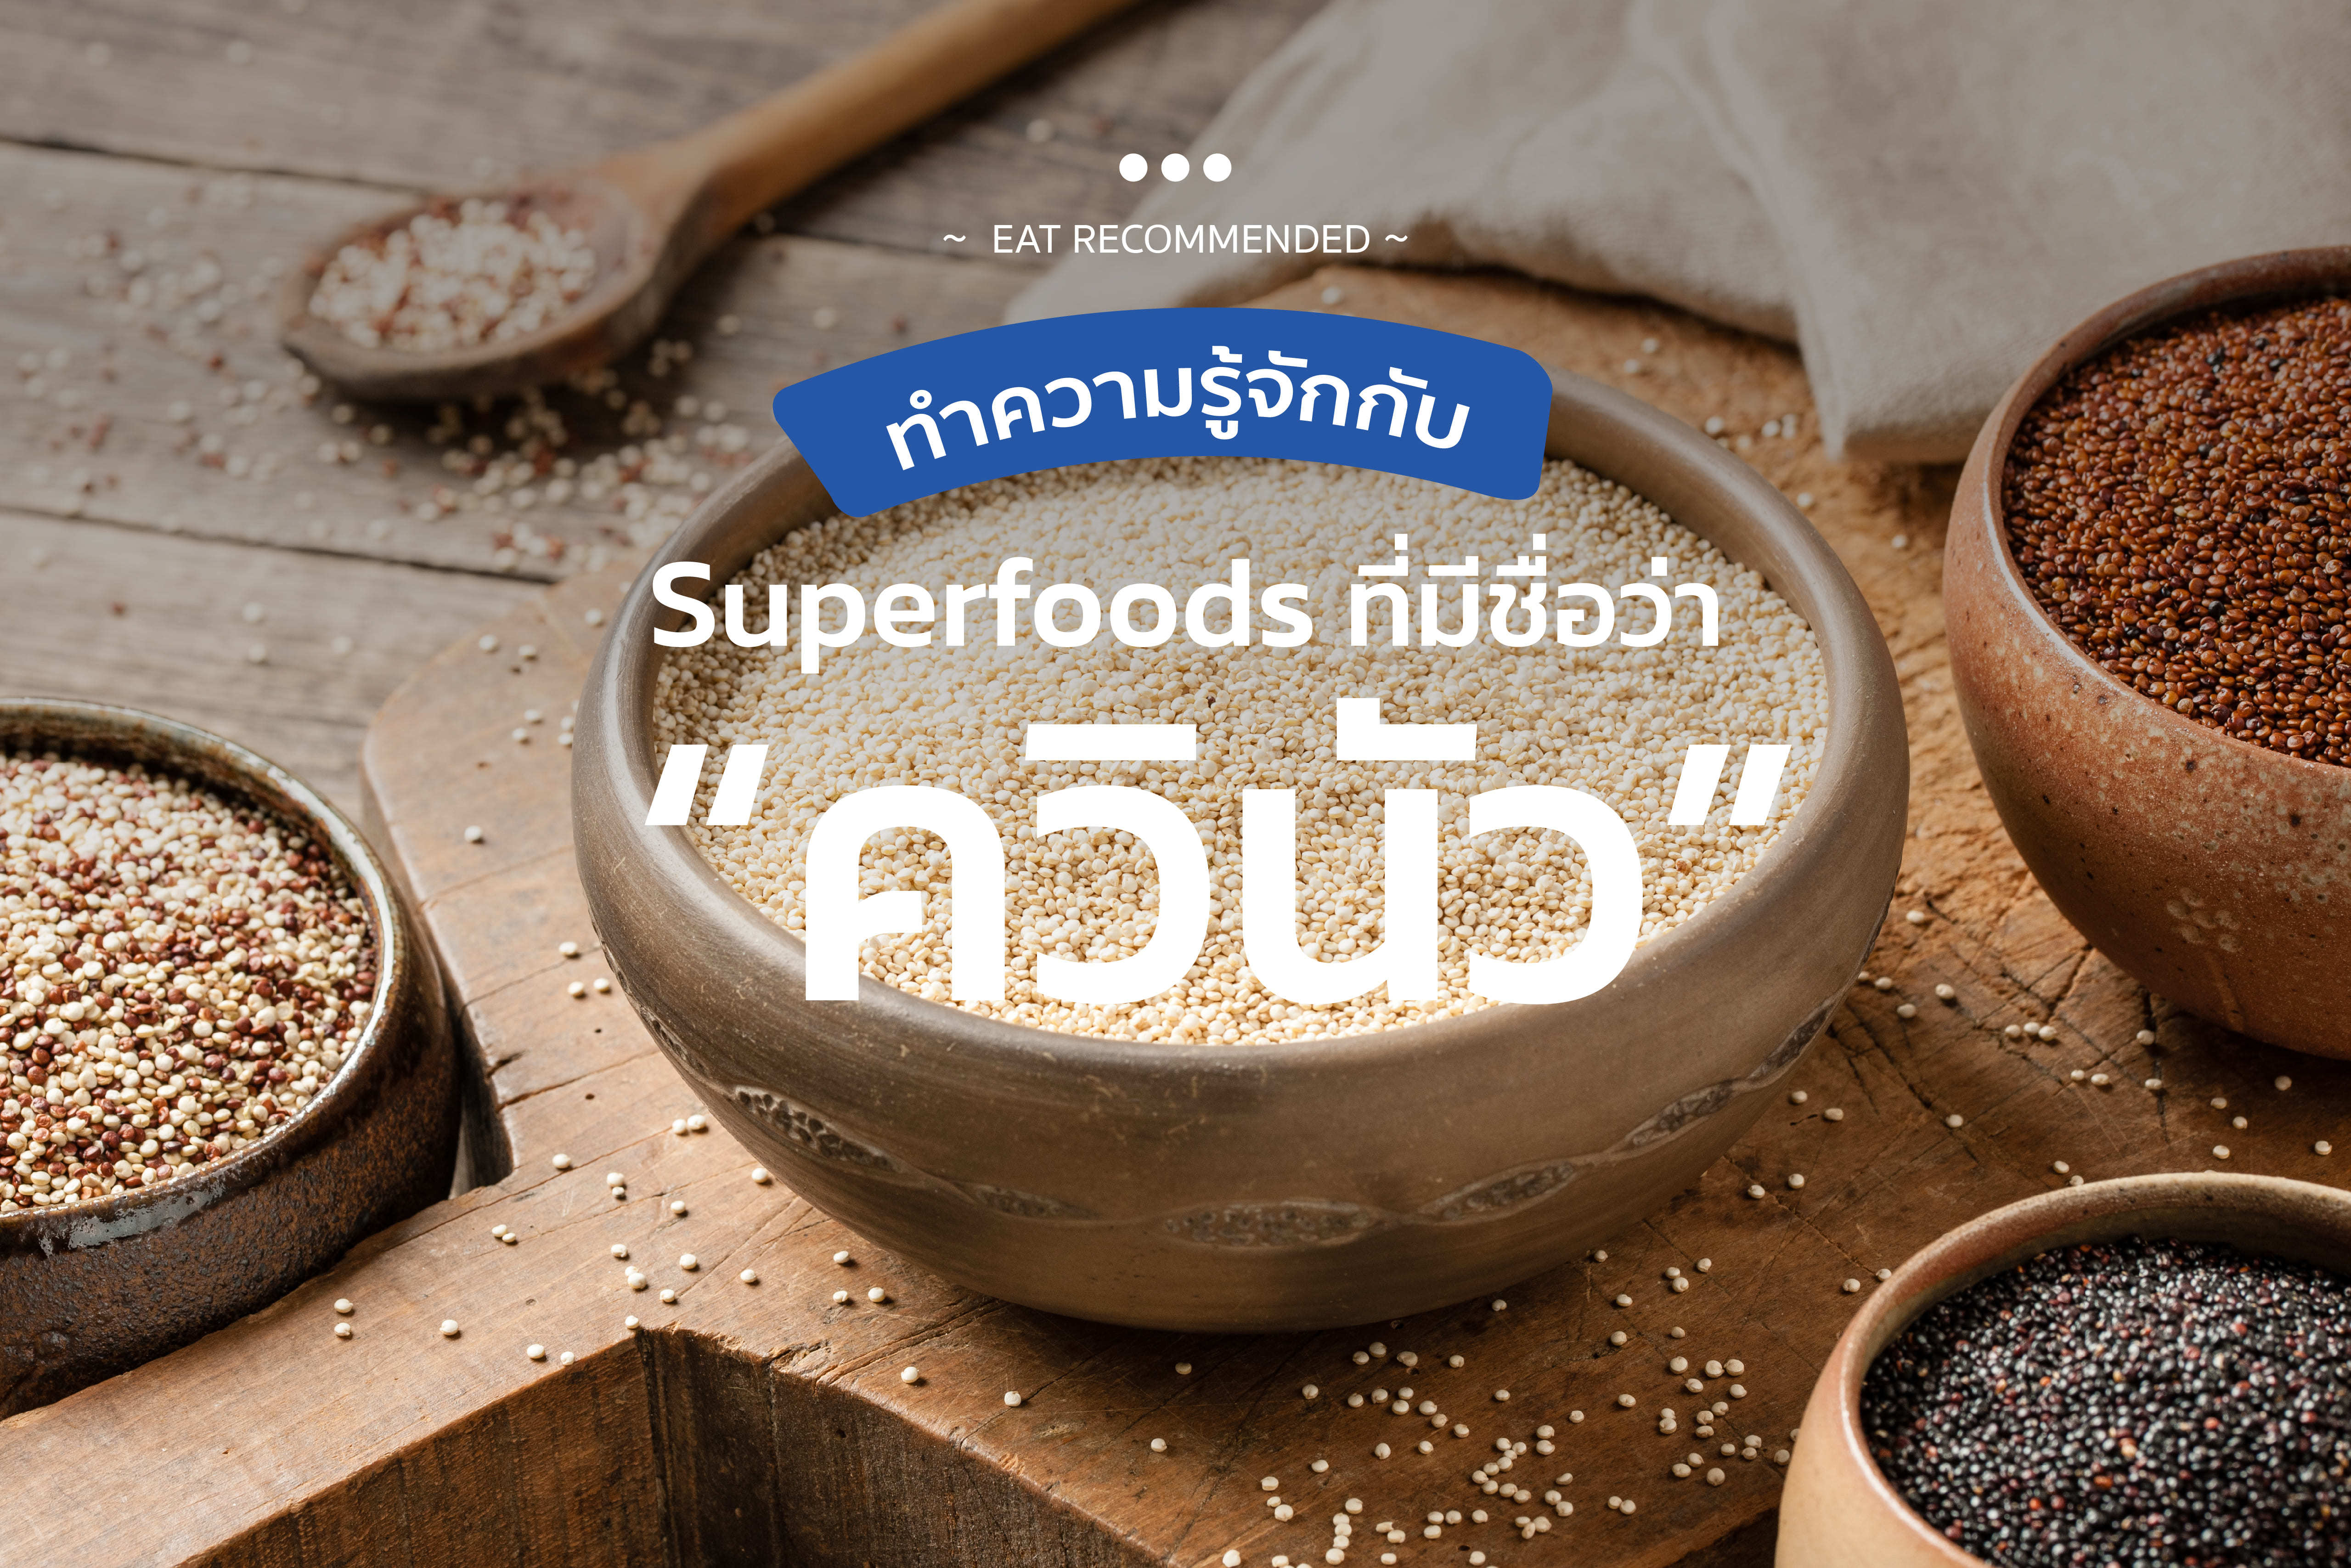 ทำความรู้จักกับ Superfoods ที่มีชื่อว่า “ควินัว”